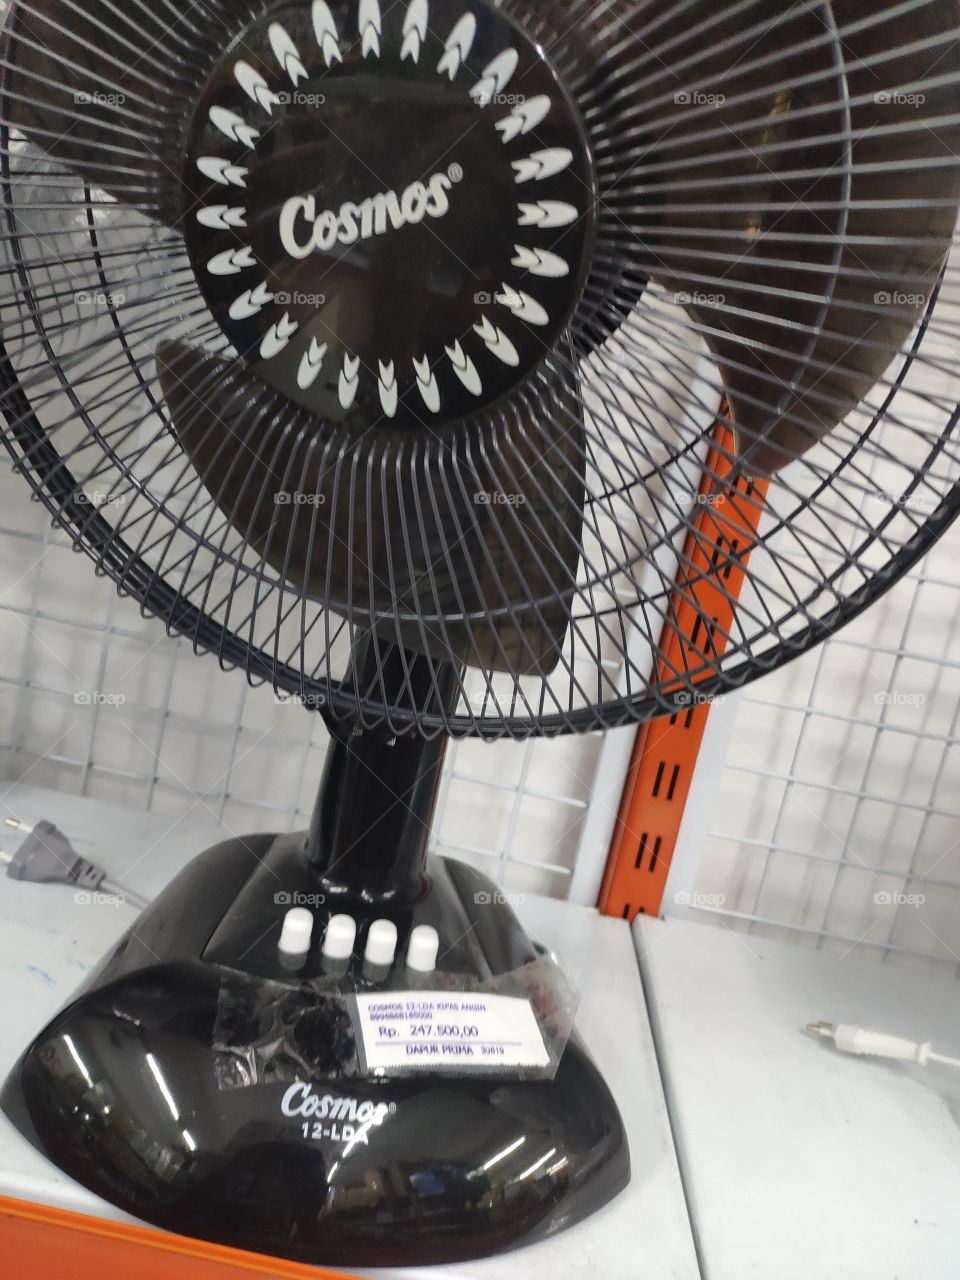 a fan